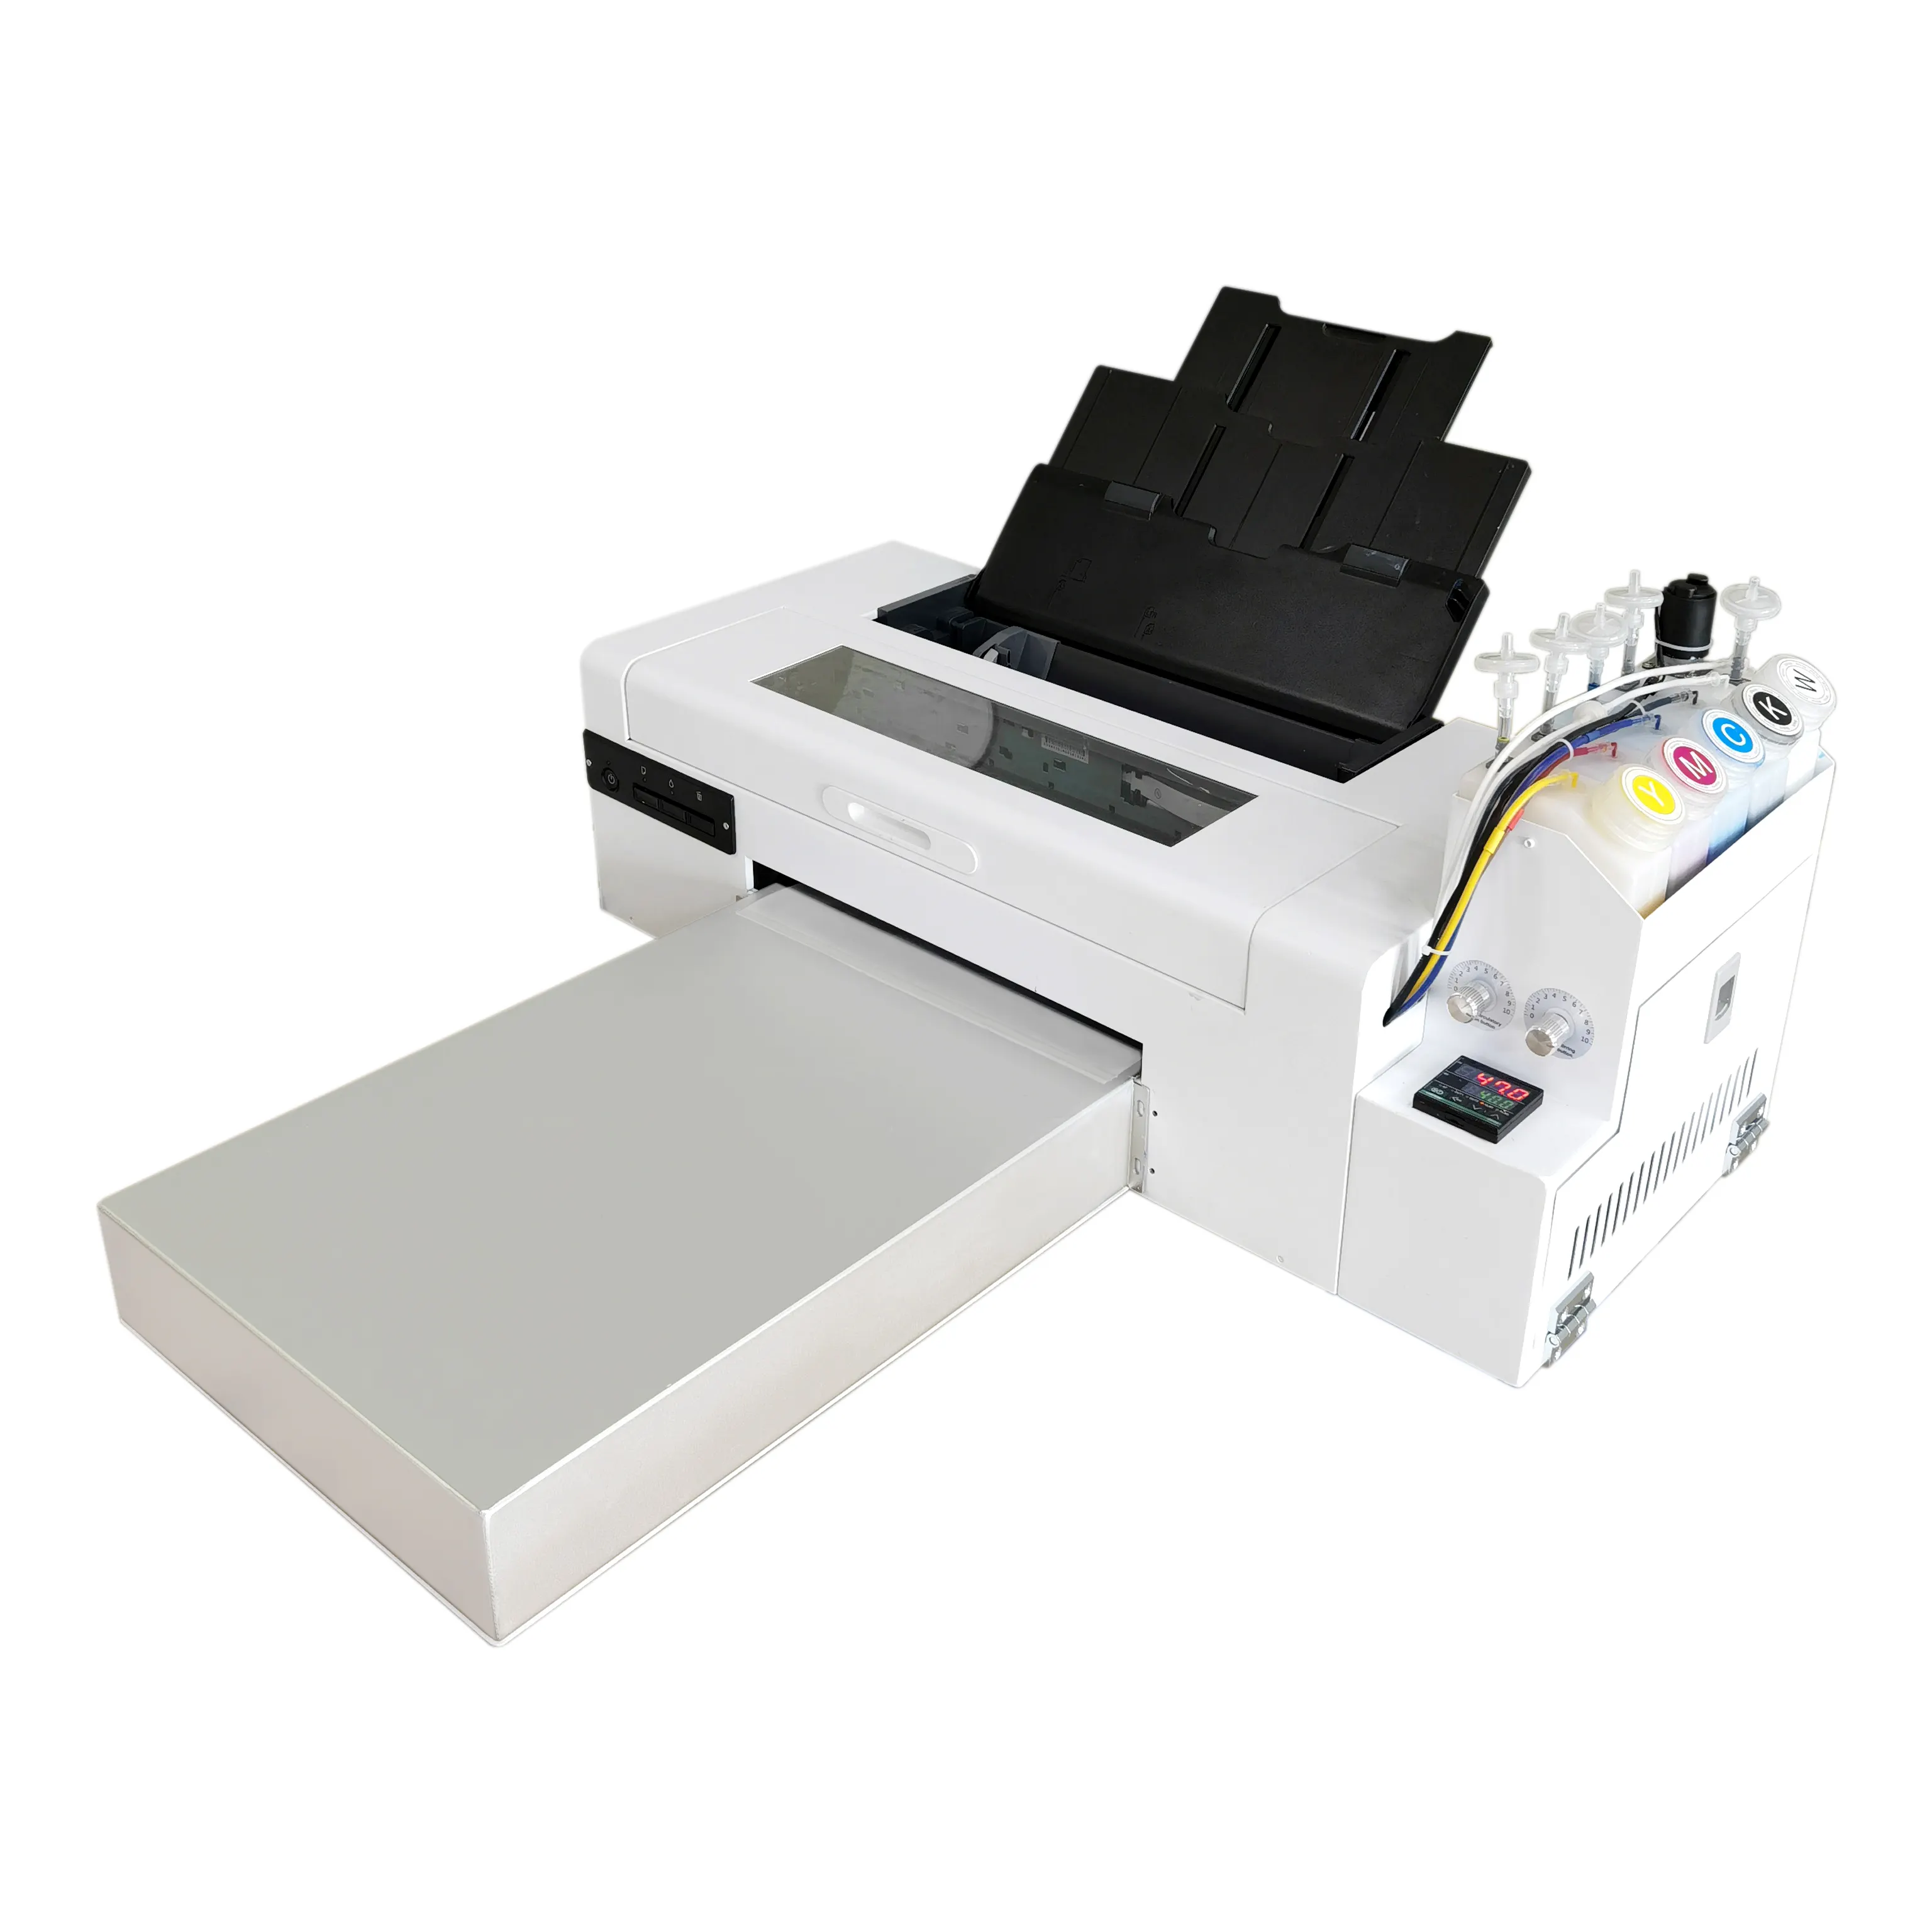 A3 A4 Machine Converted L1800 DTF Printer Pet Film Printer T-shirt printing machine with A4 A3 PET film